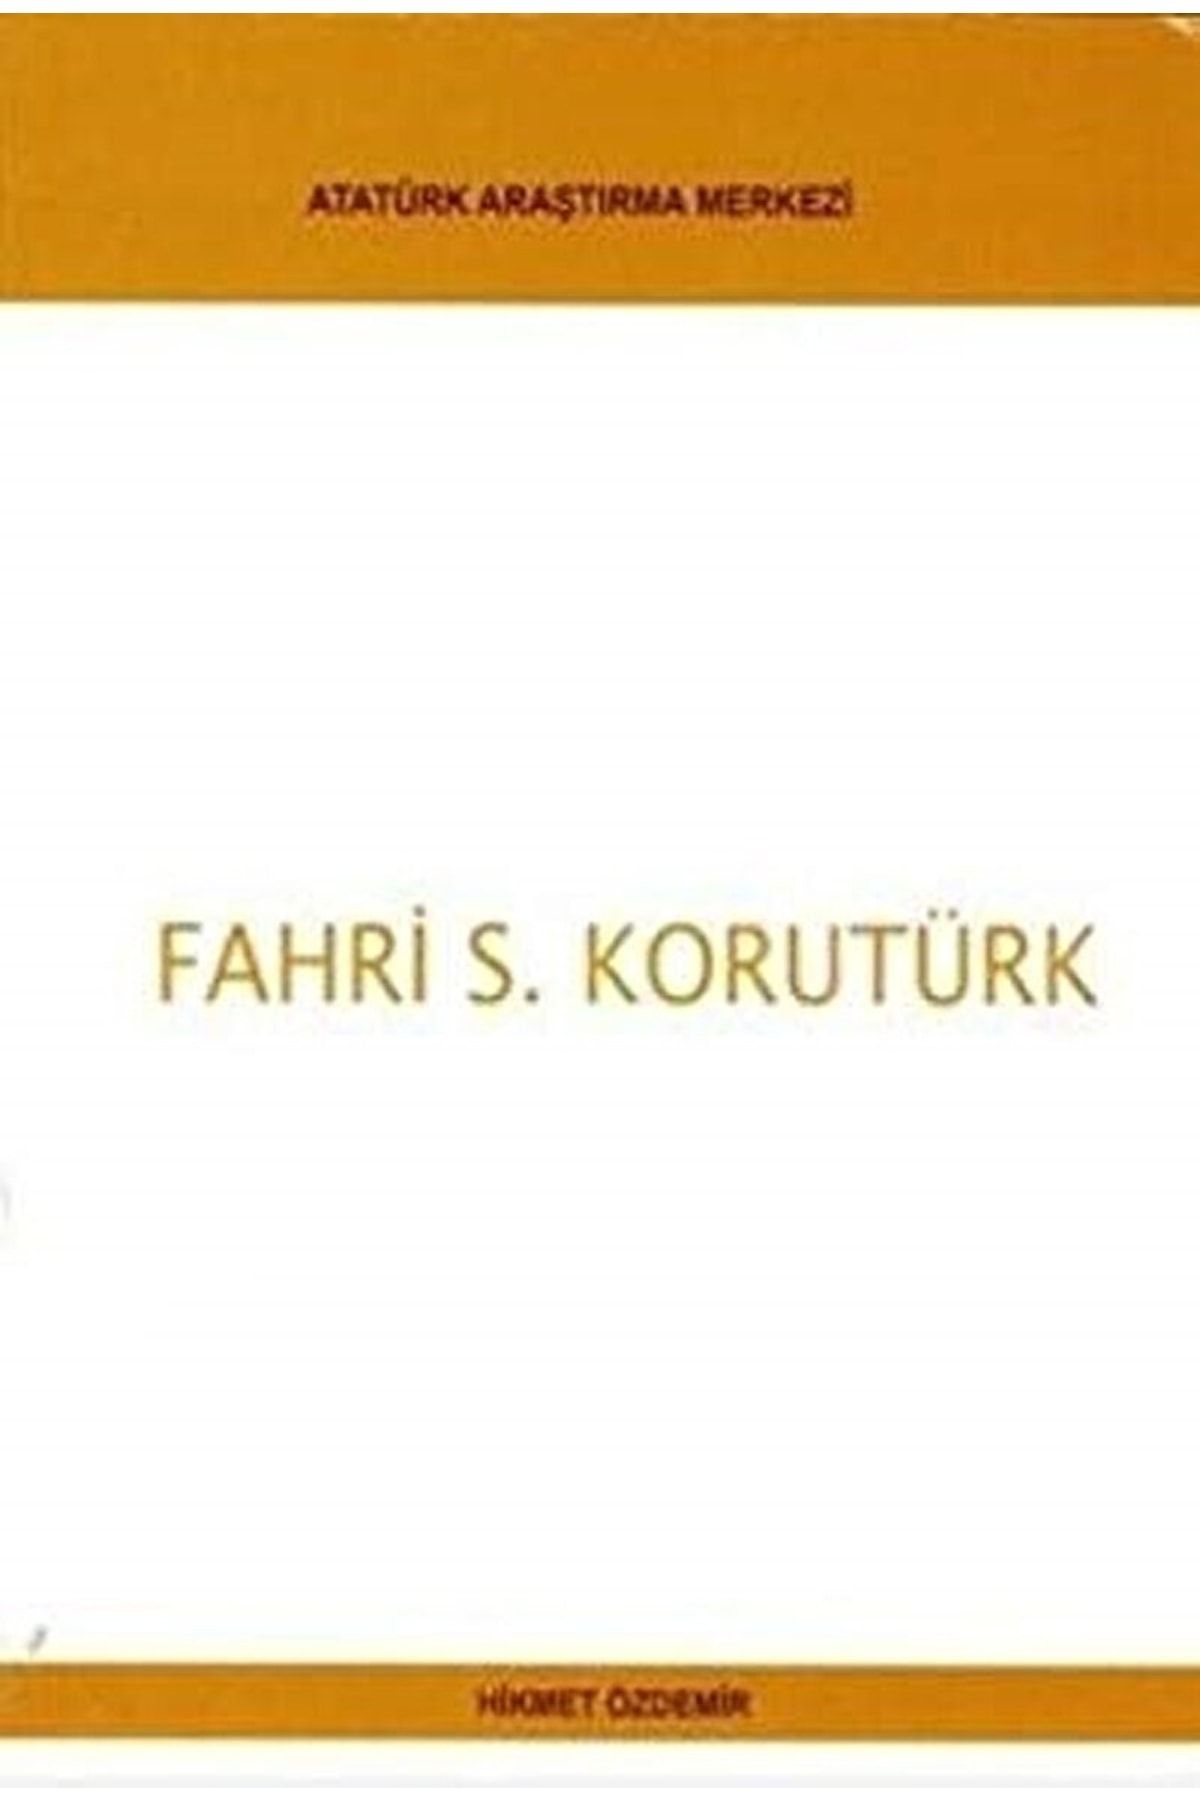 Atatürk Araştırma Merkezi Fahri S. Korutürk / Hikmet Özdemir / / 9789751622389